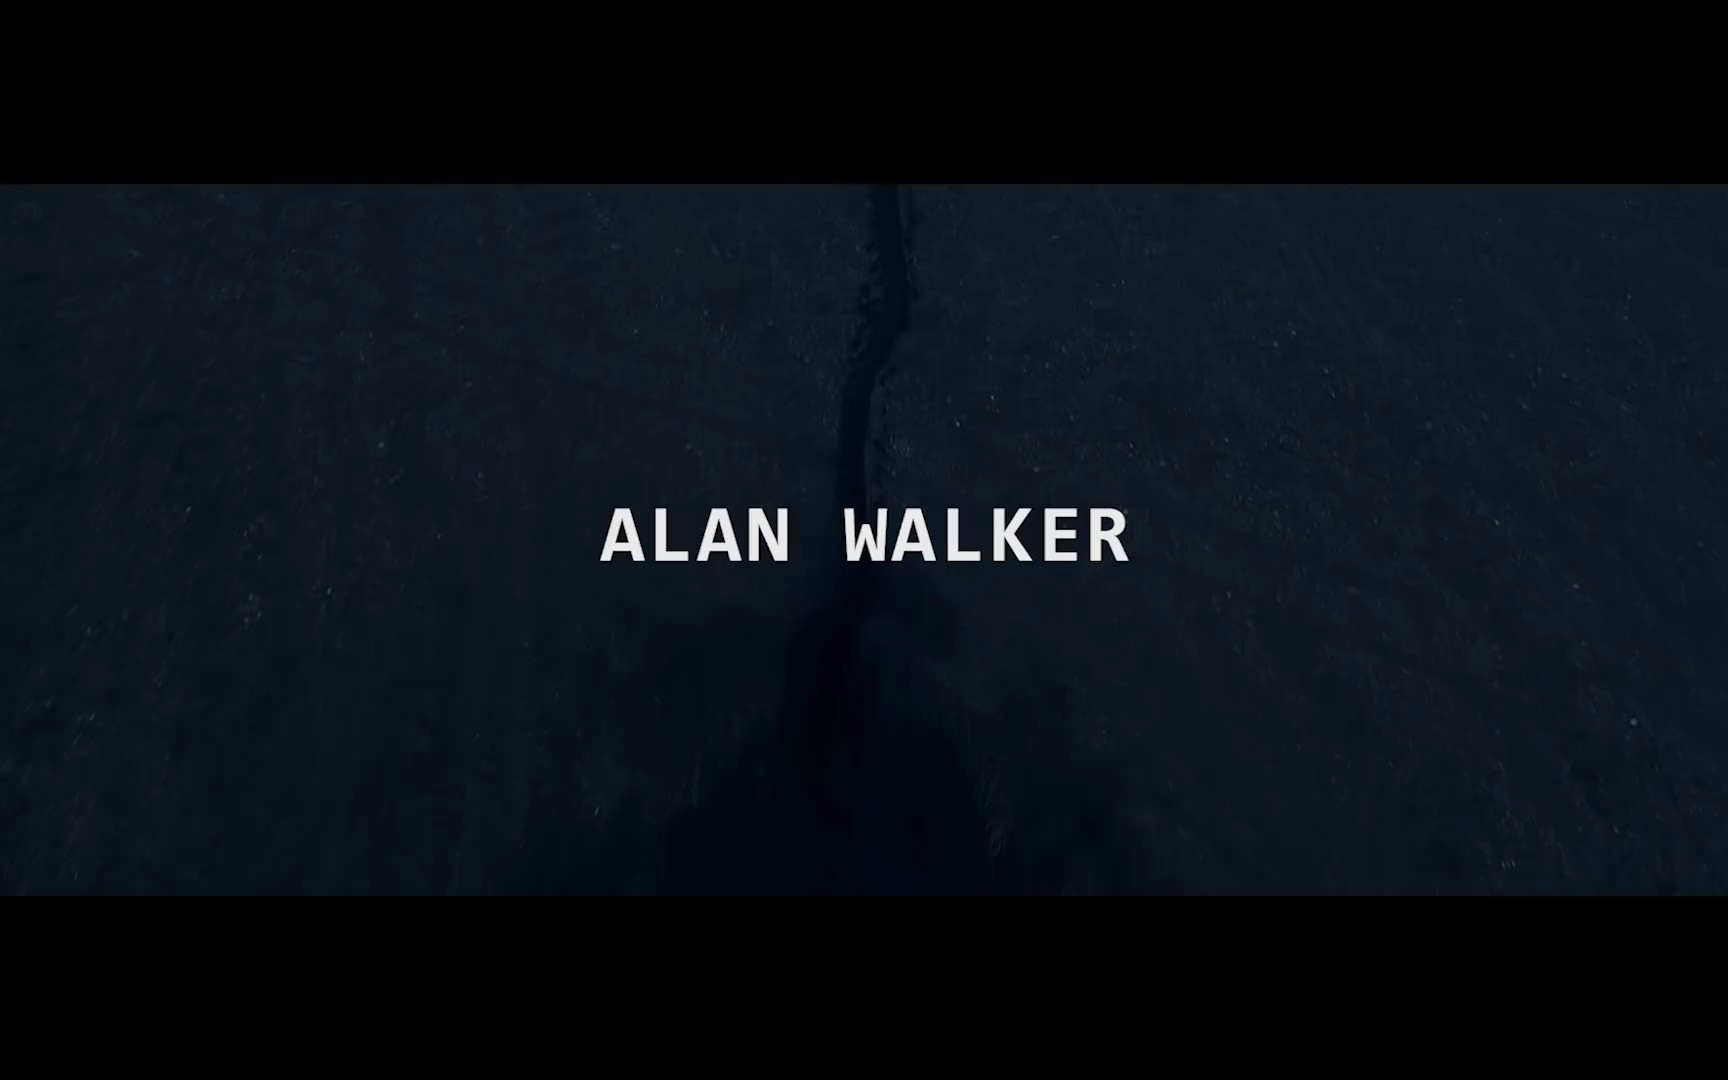 【转载】与《darkside》时隔两月,9月28日教主alan walker新歌